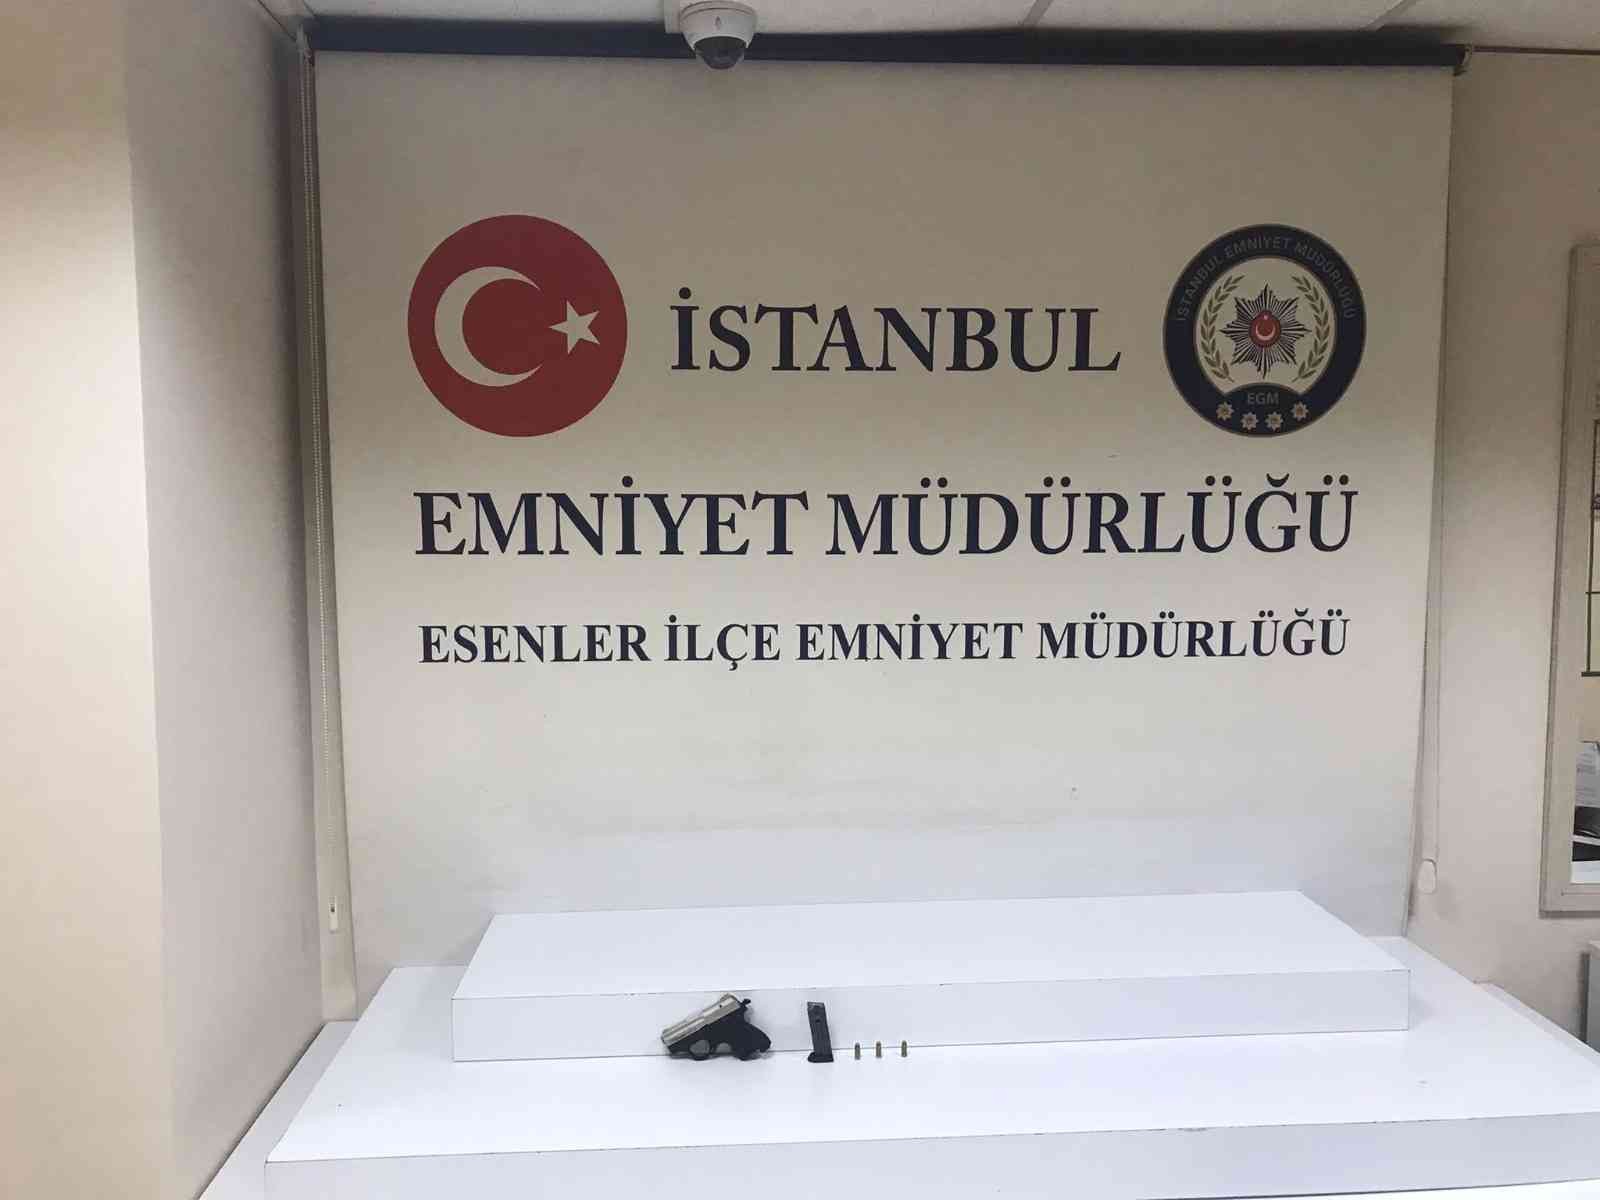 Esenler’de öldürülen 27 yaşındaki gencin katil zanlısı kardeşi çıktı #istanbul